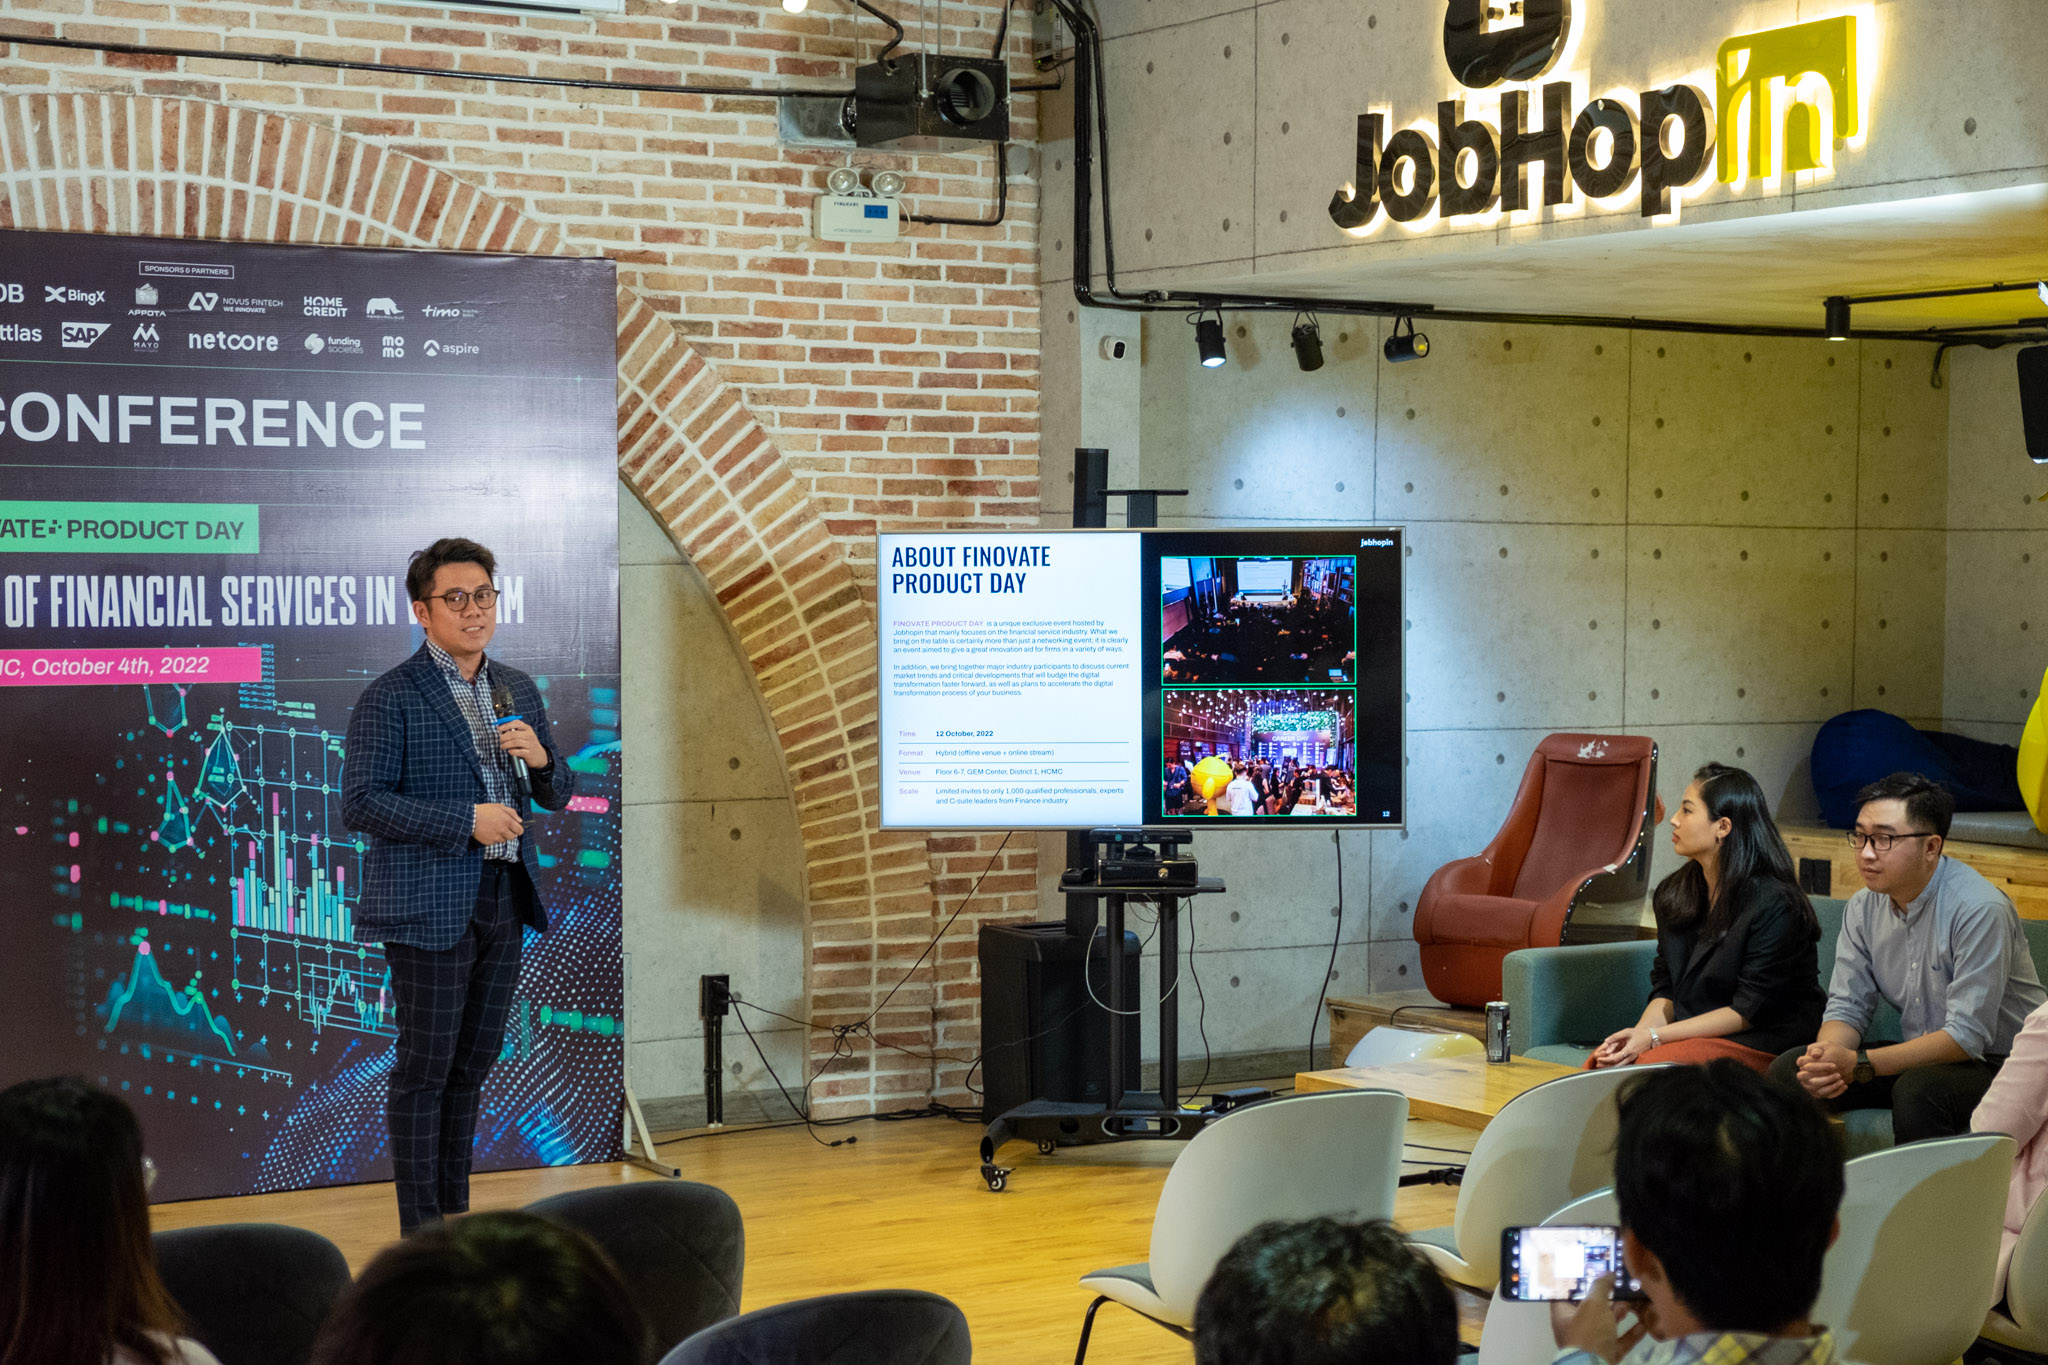 JobHopin tổ chức sự kiện Finovate Product Day vào ngày 12/10 tới tại Thành phố Hồ Chí Minh